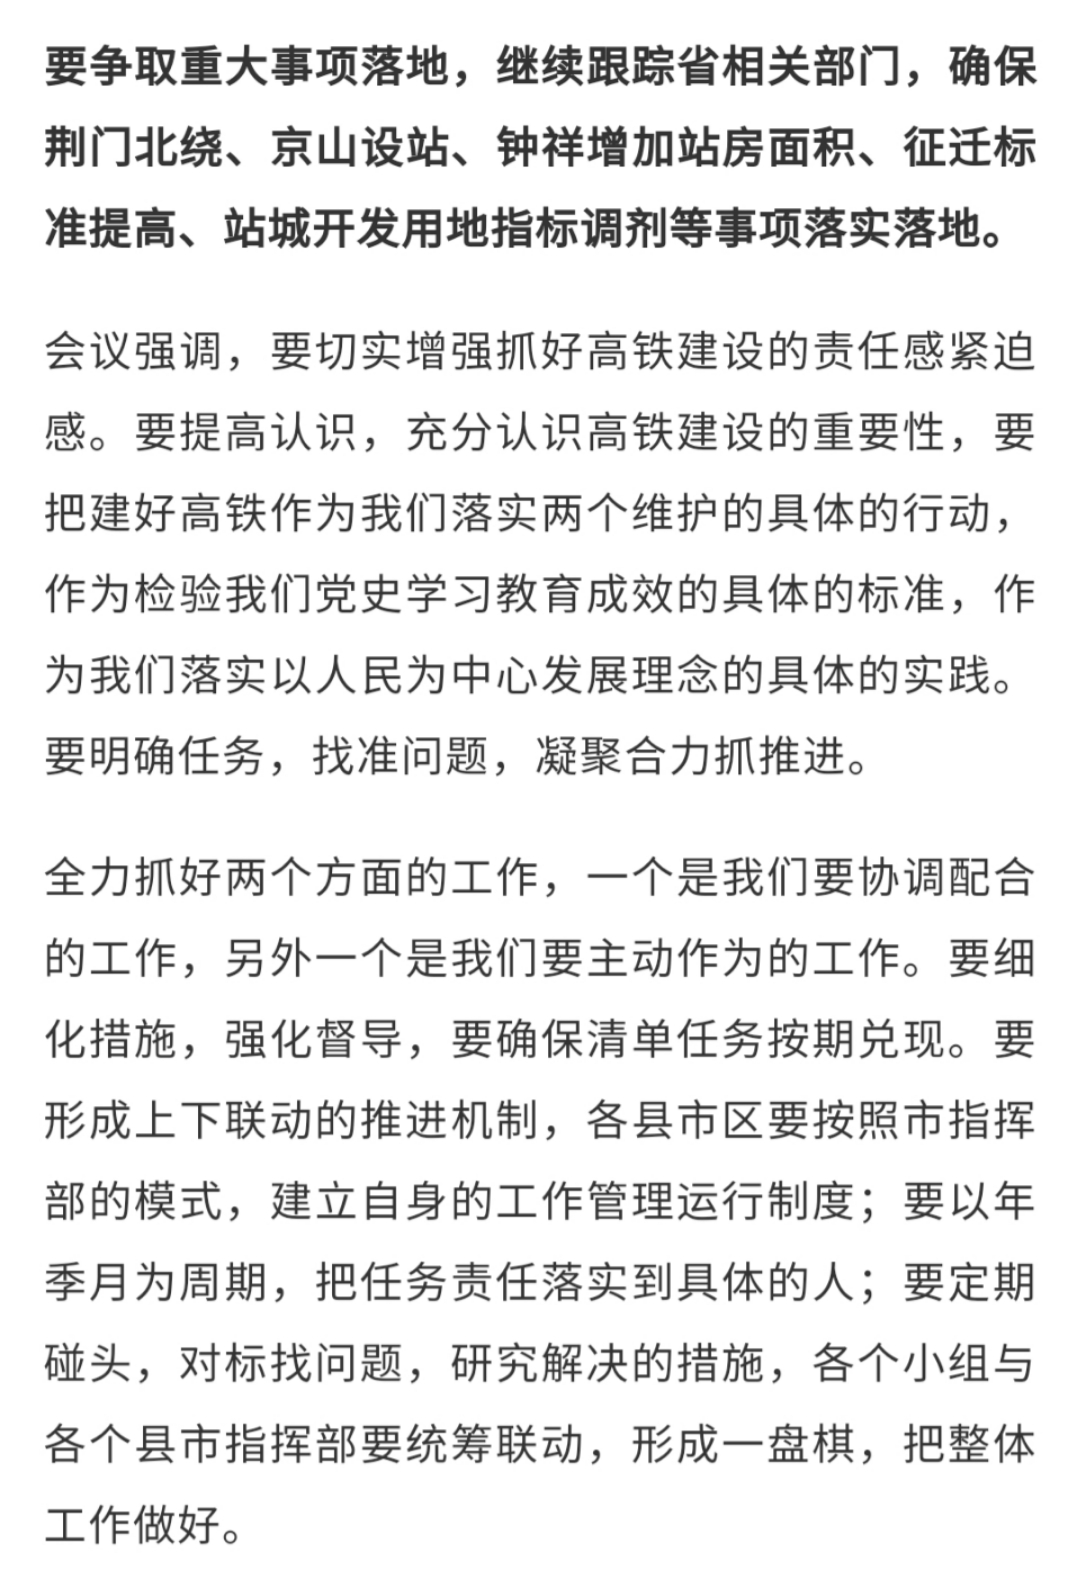 沿江高铁武汉至宜昌段开工时间确定9月20日全线开工钟祥京山顺利上车